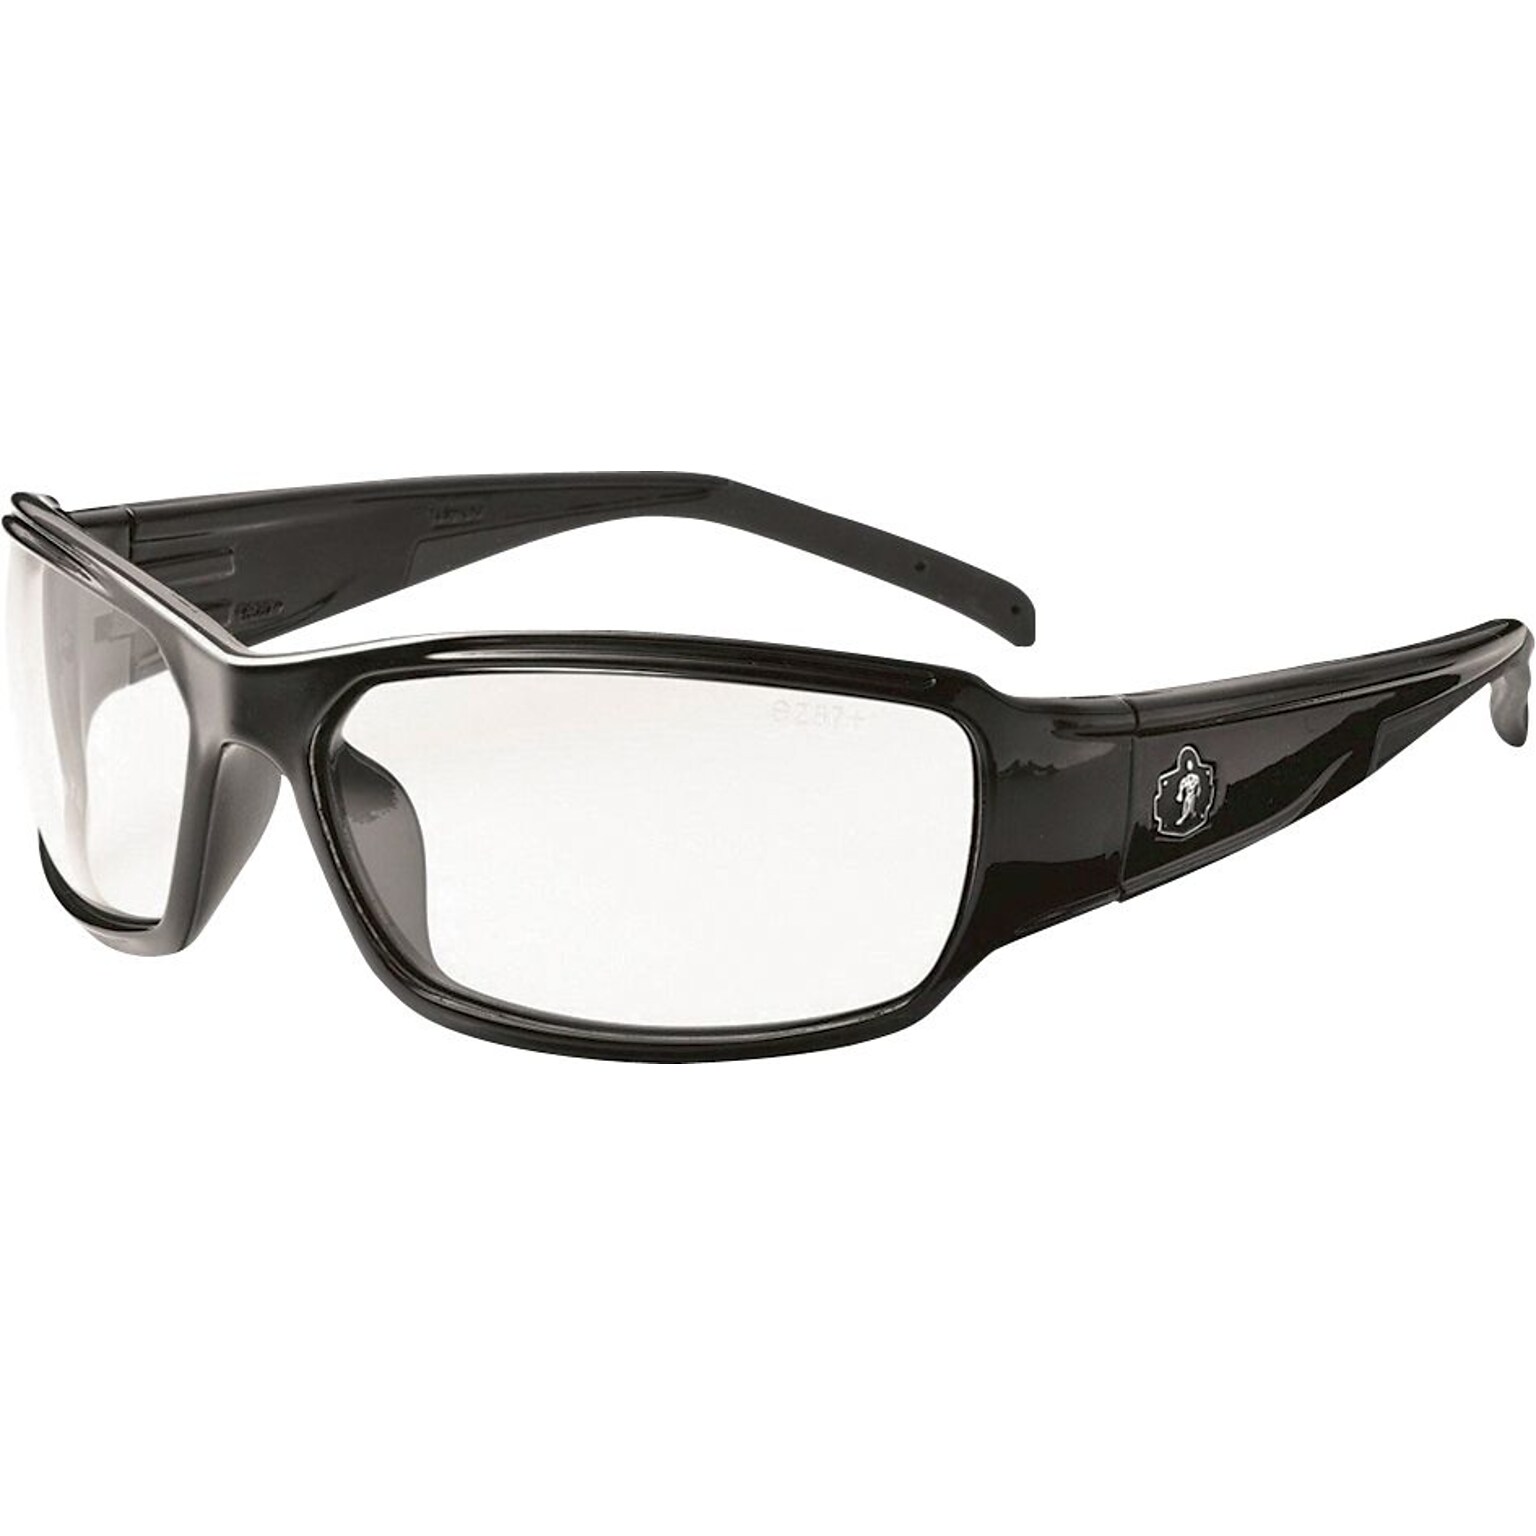 Ergodyne Thor-AF Safety Glasses, Black/Clear, Anti-Scratch/Fog